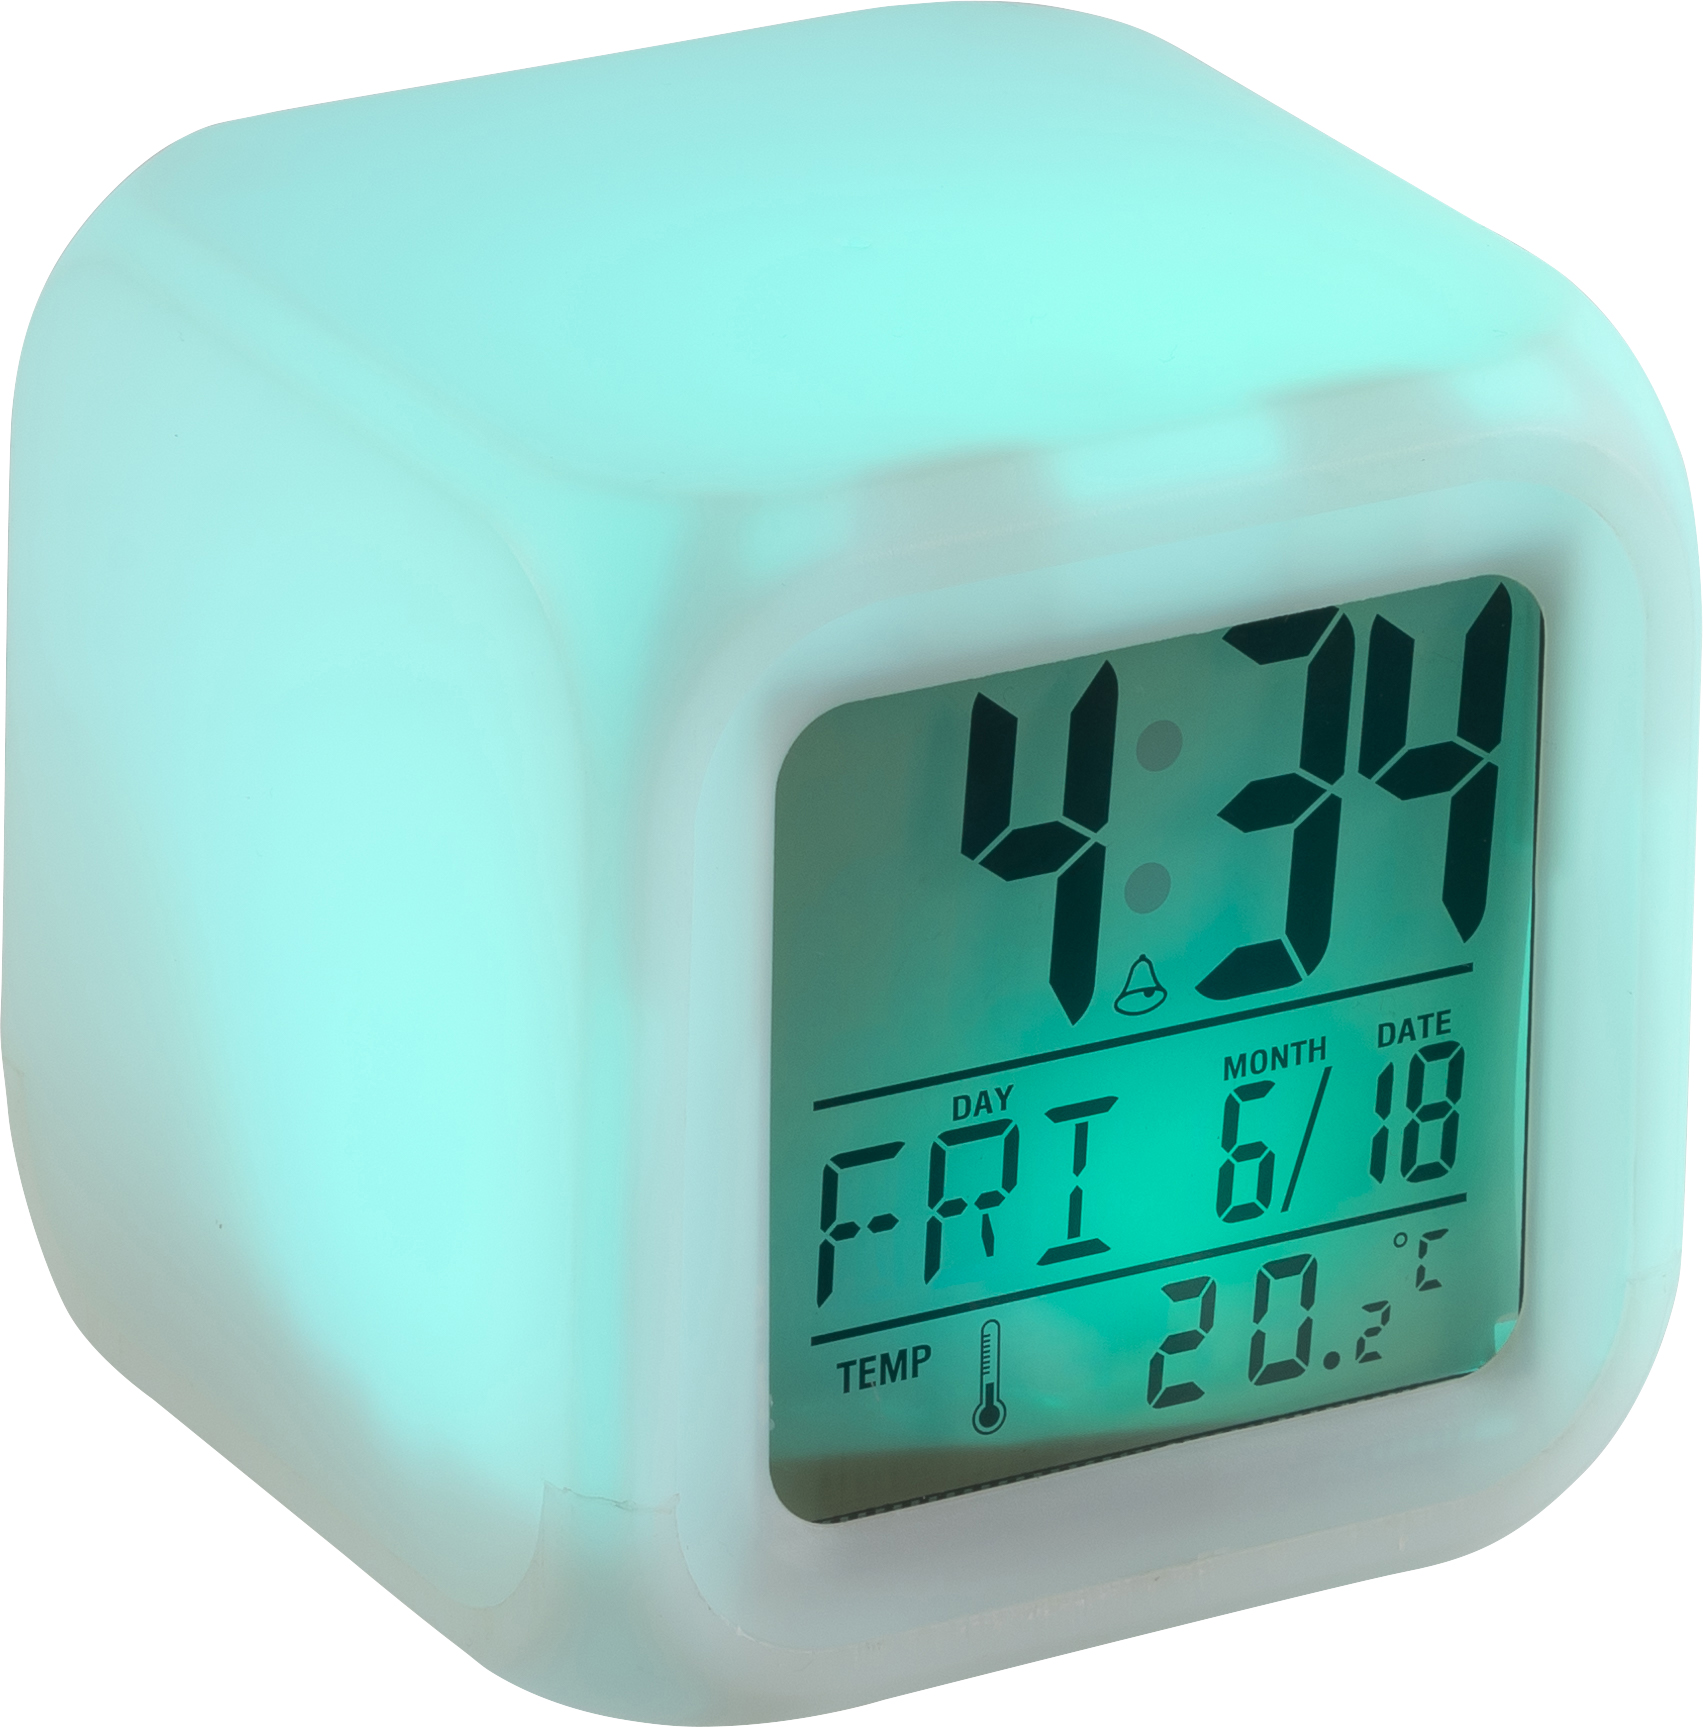 008533 002999999 3d045 rgt pro02 fal - Cube alarm clock